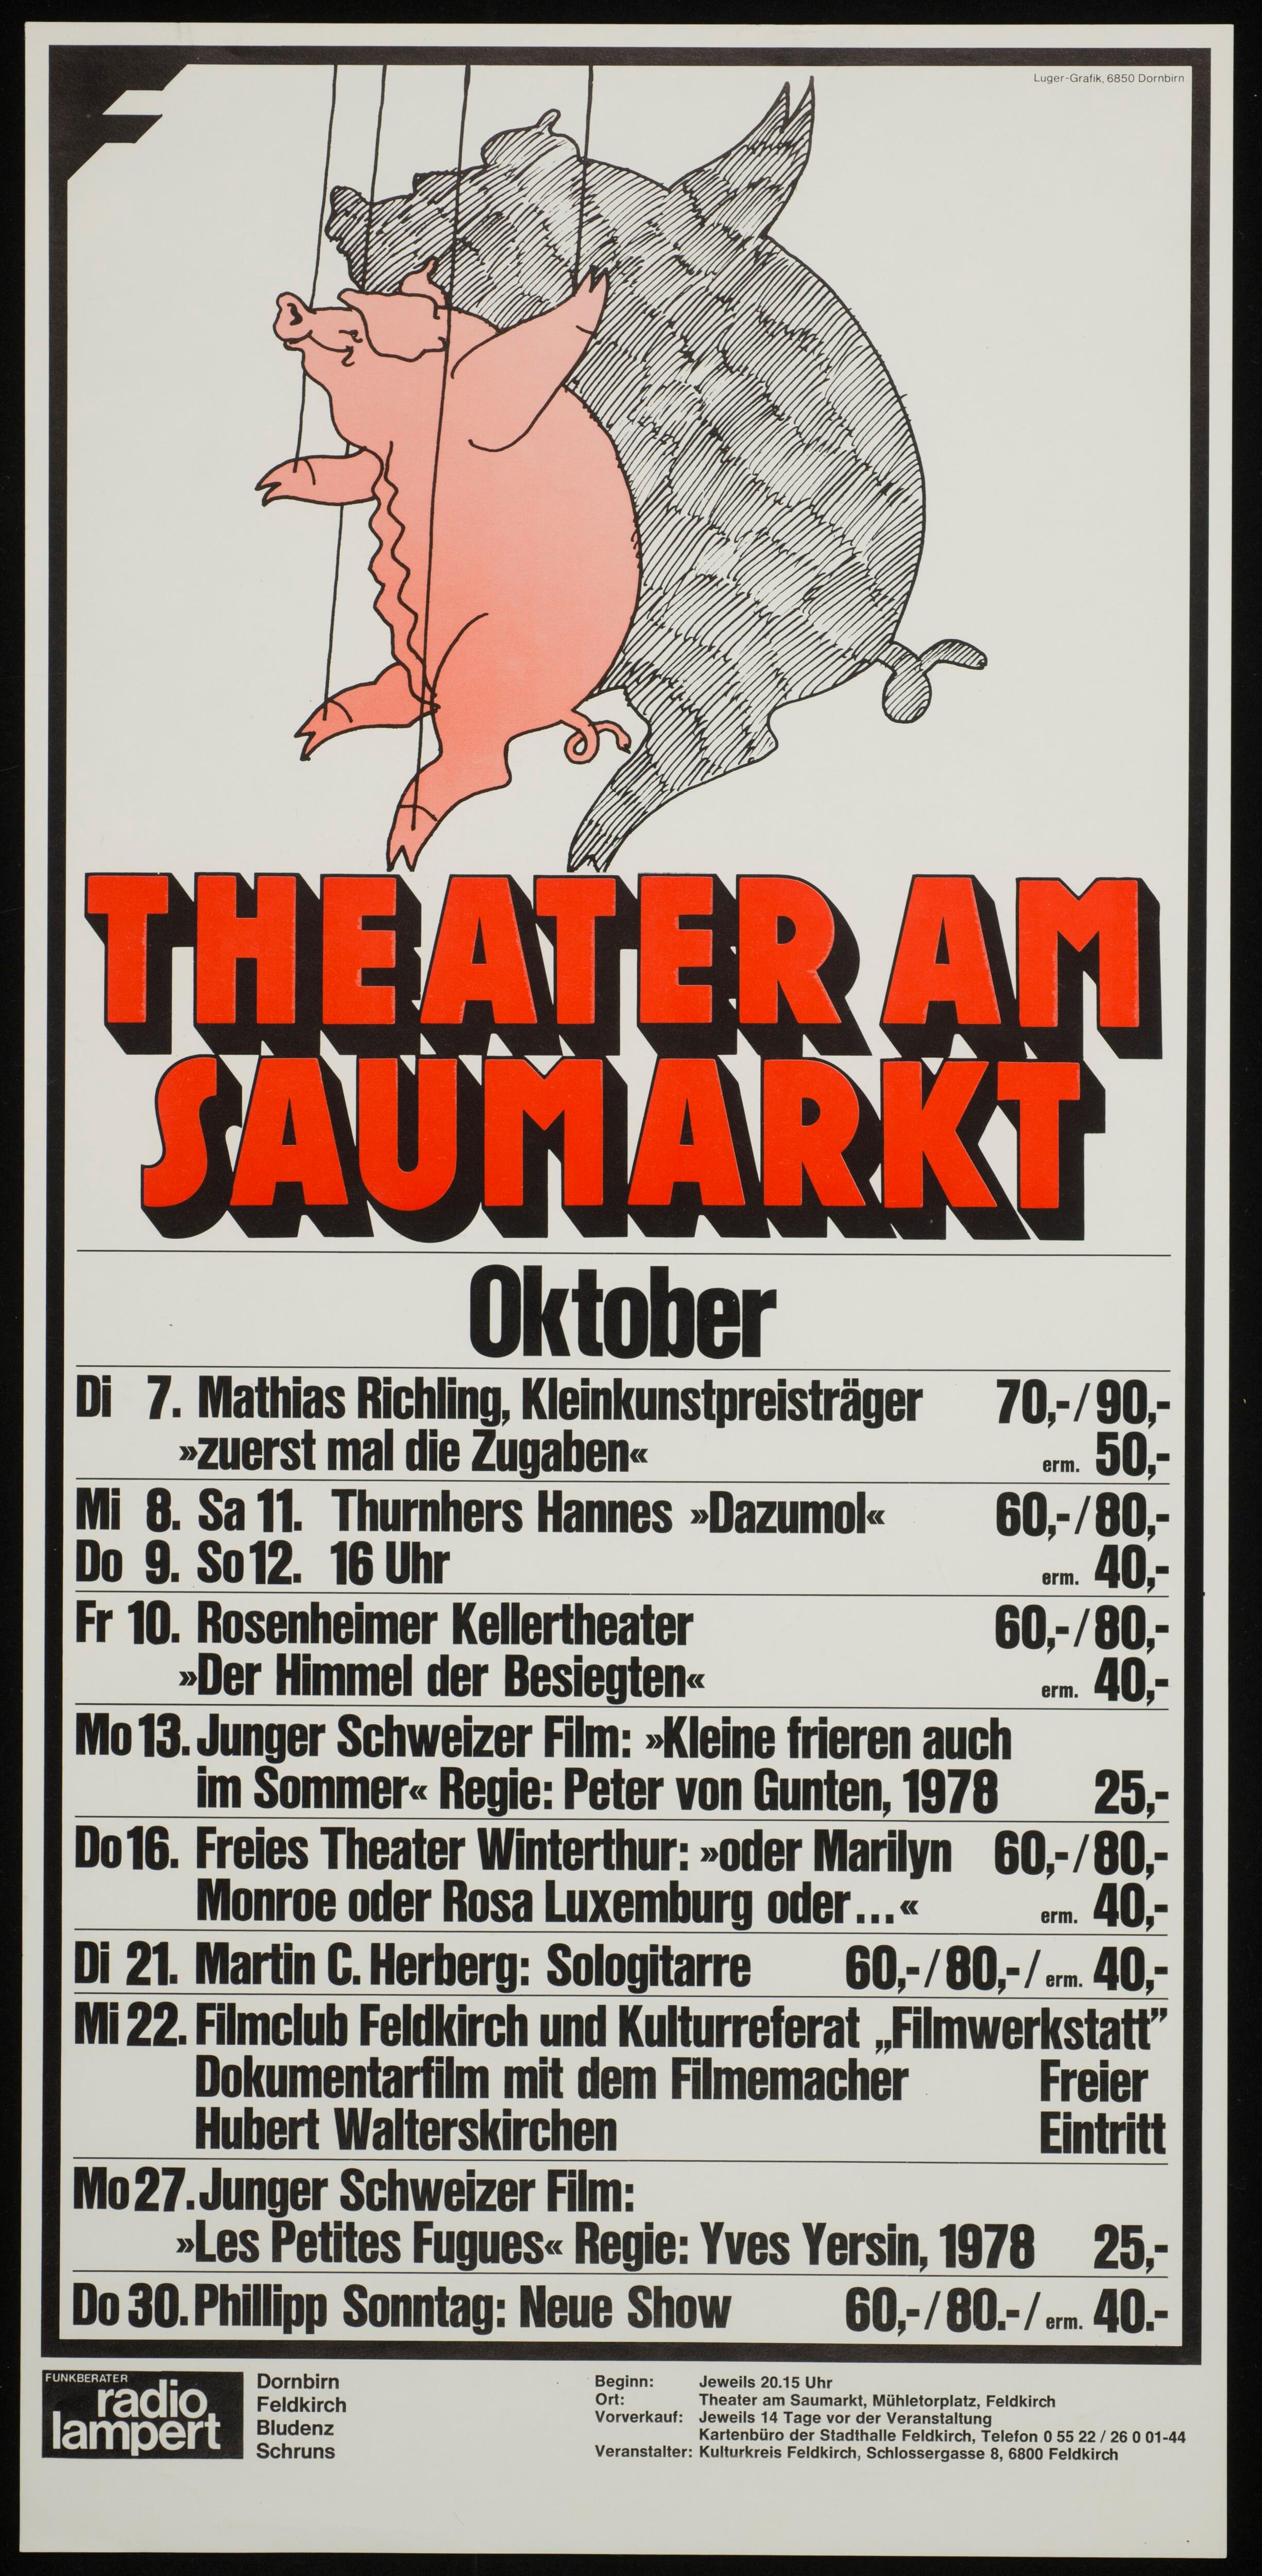 Theater am Saumarkt></div>


    <hr>
    <div class=